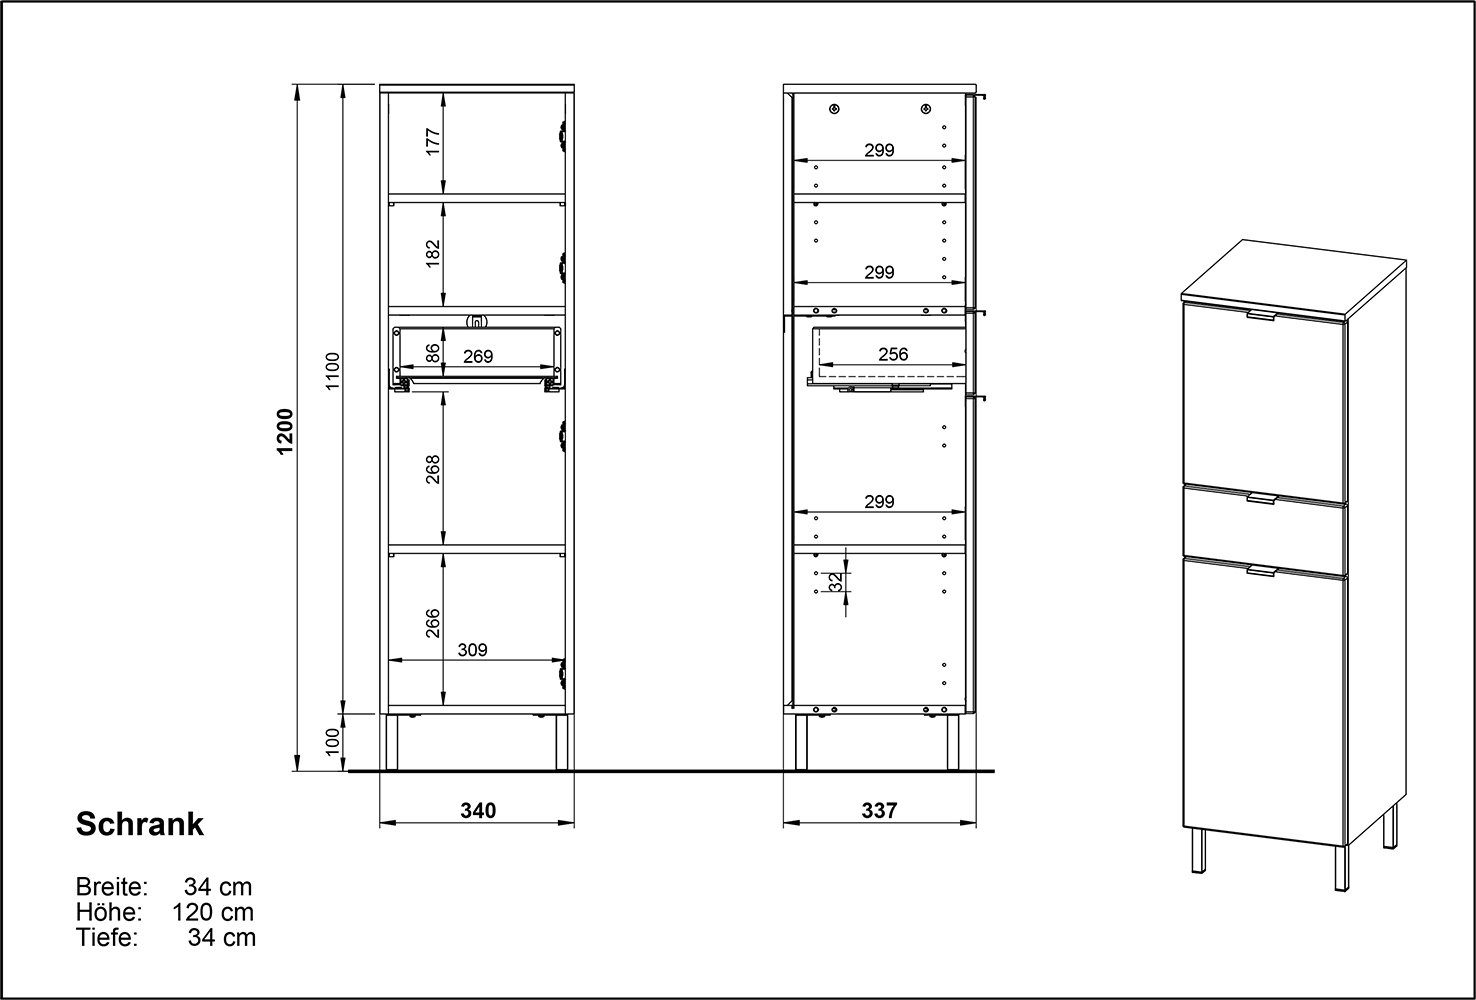 möbelando Midischrank 415 (BxHxT: 34x120x34 und mit weiss cm) Türen in 2 Einlegeböden hellbraun, 2